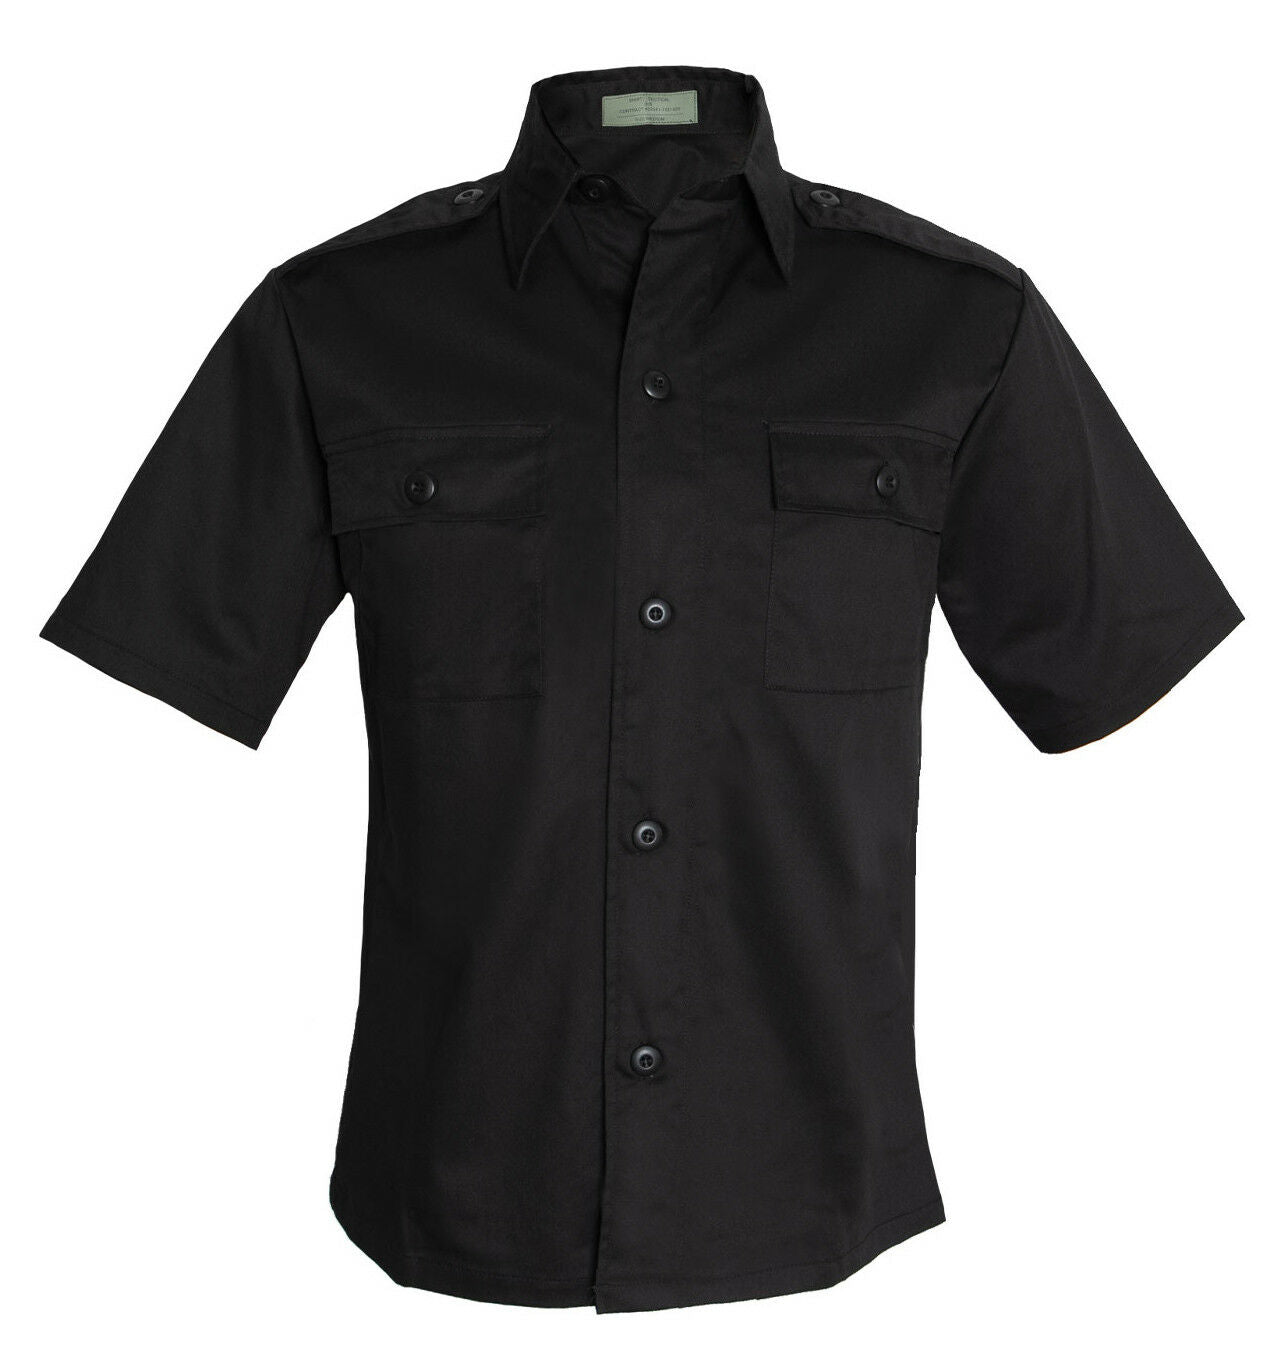 Rothco Short Sleeve Tactical Shirt - Black